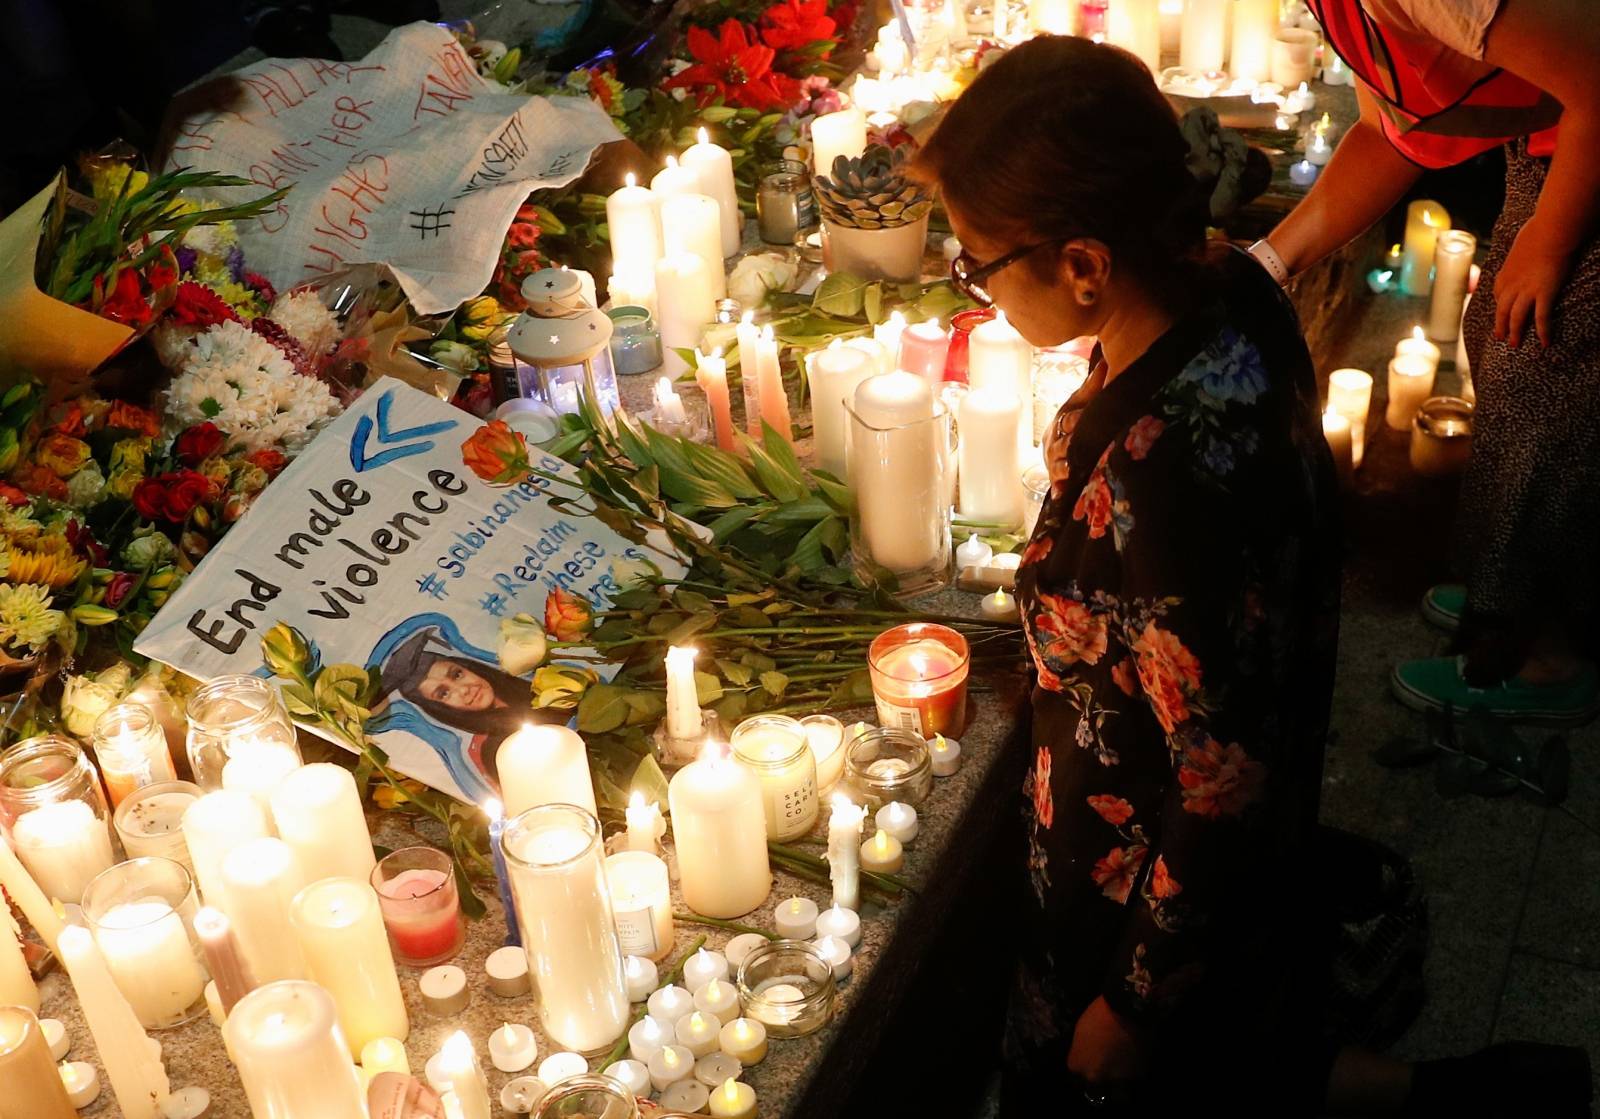 Vigil in memory of Sabina Nessa in London